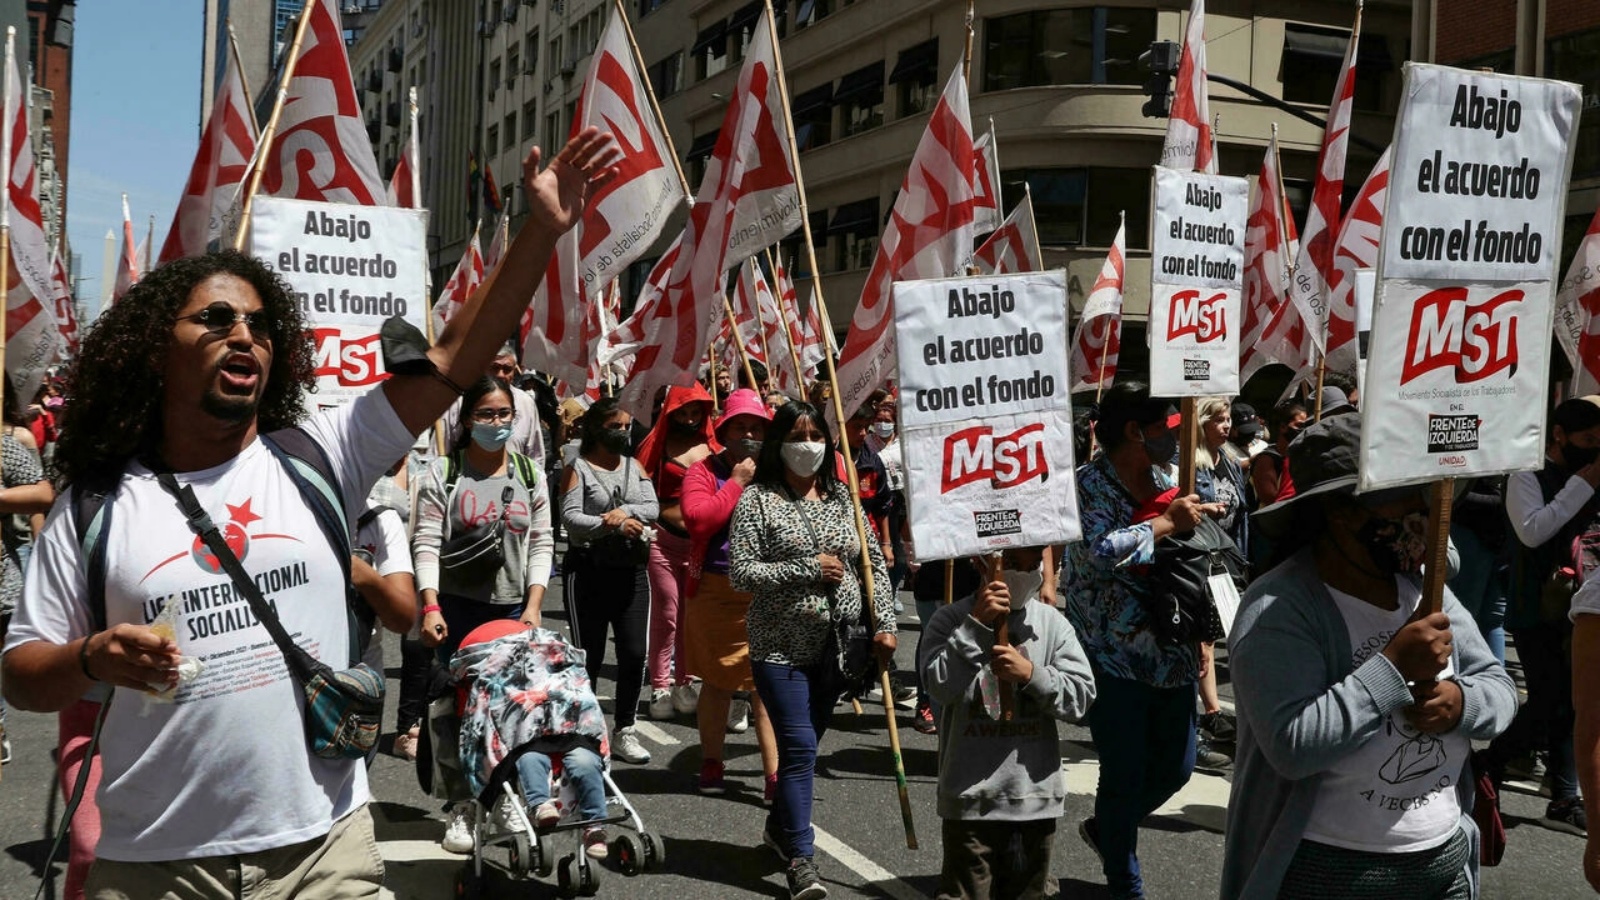 أعضاء الجماعات اليسارية الأرجنتينية يتظاهرون في العاصمة ضد صندوق النقد الدولي عشية دفع 730 مليون دولار مستحقة لسداد ديون الأرجنتين